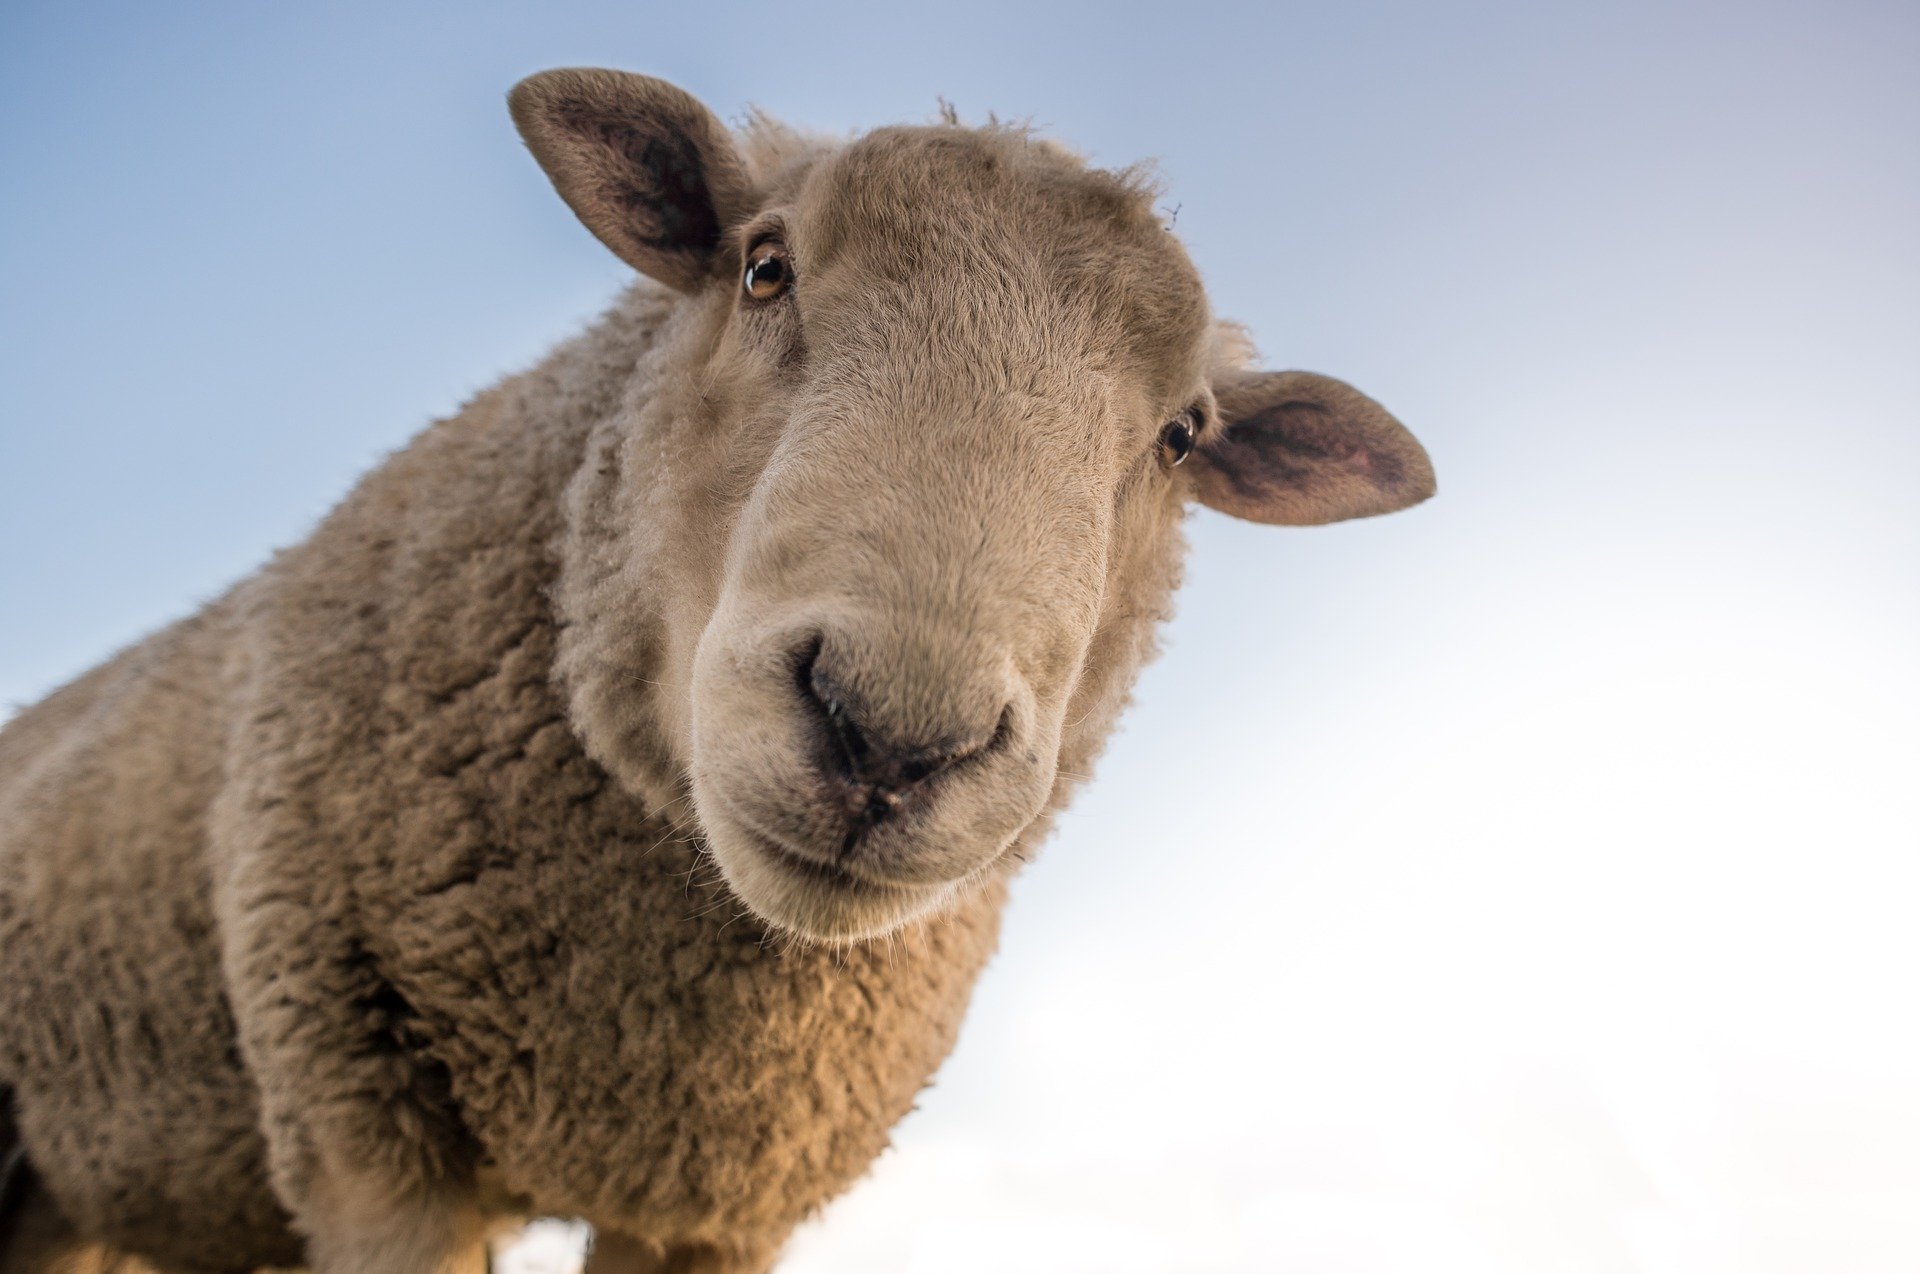 A photo of a sheep staring down at the camera